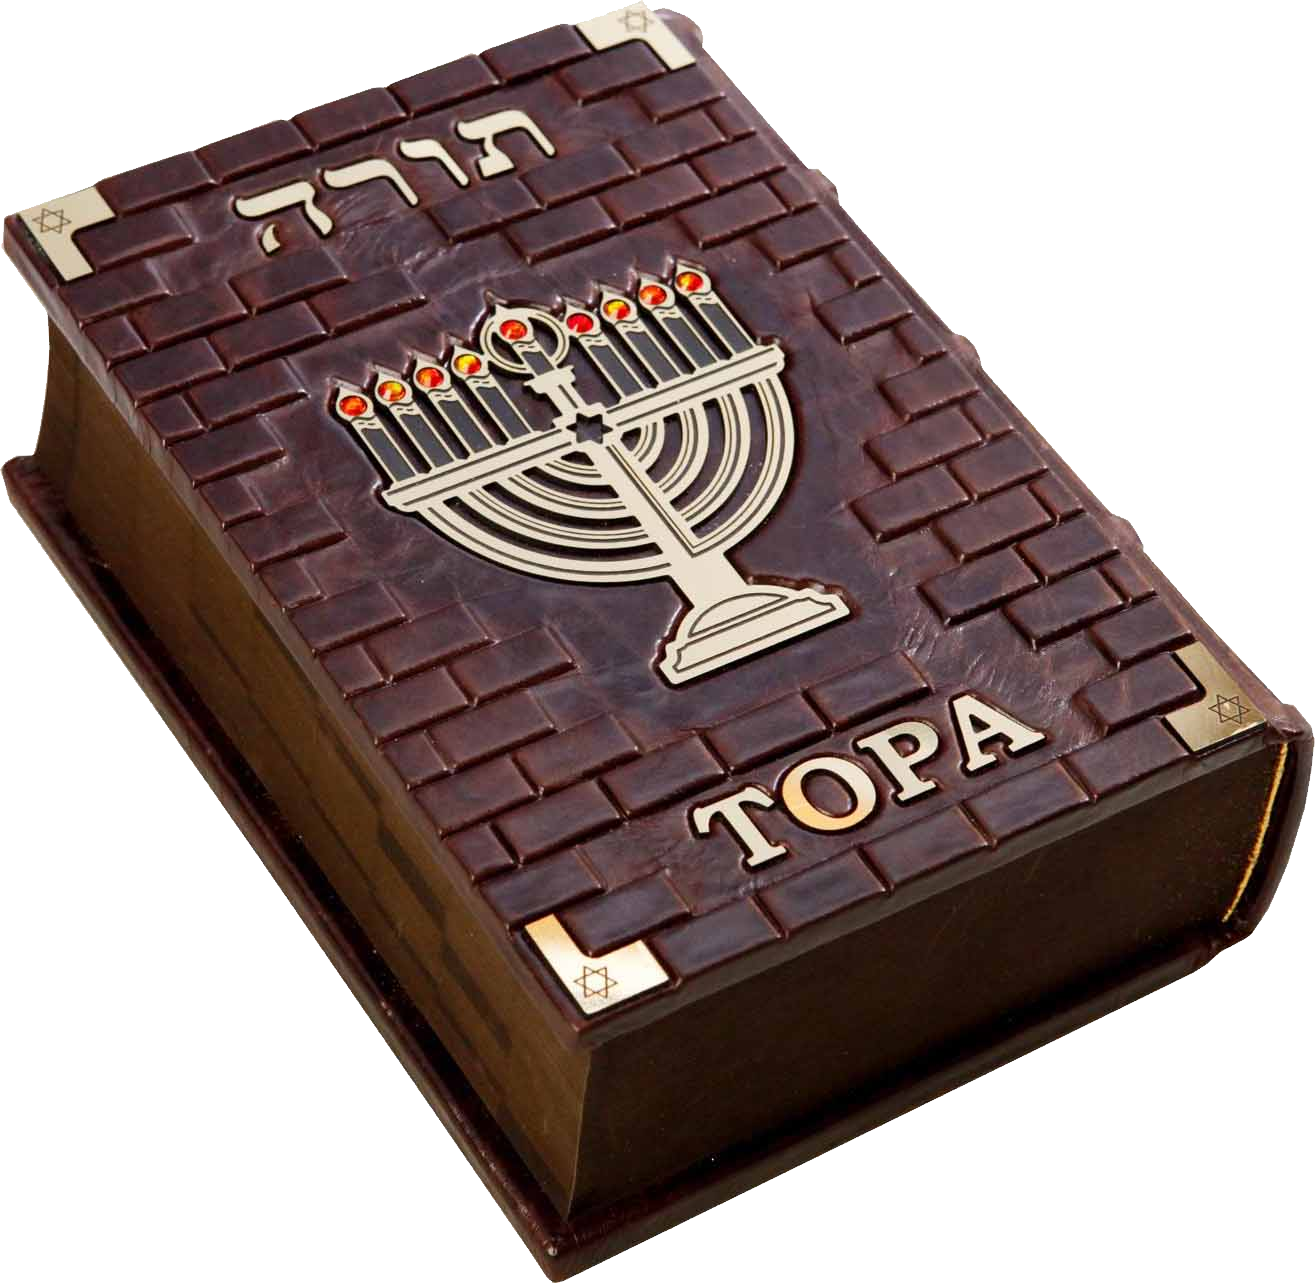 Torah PNG